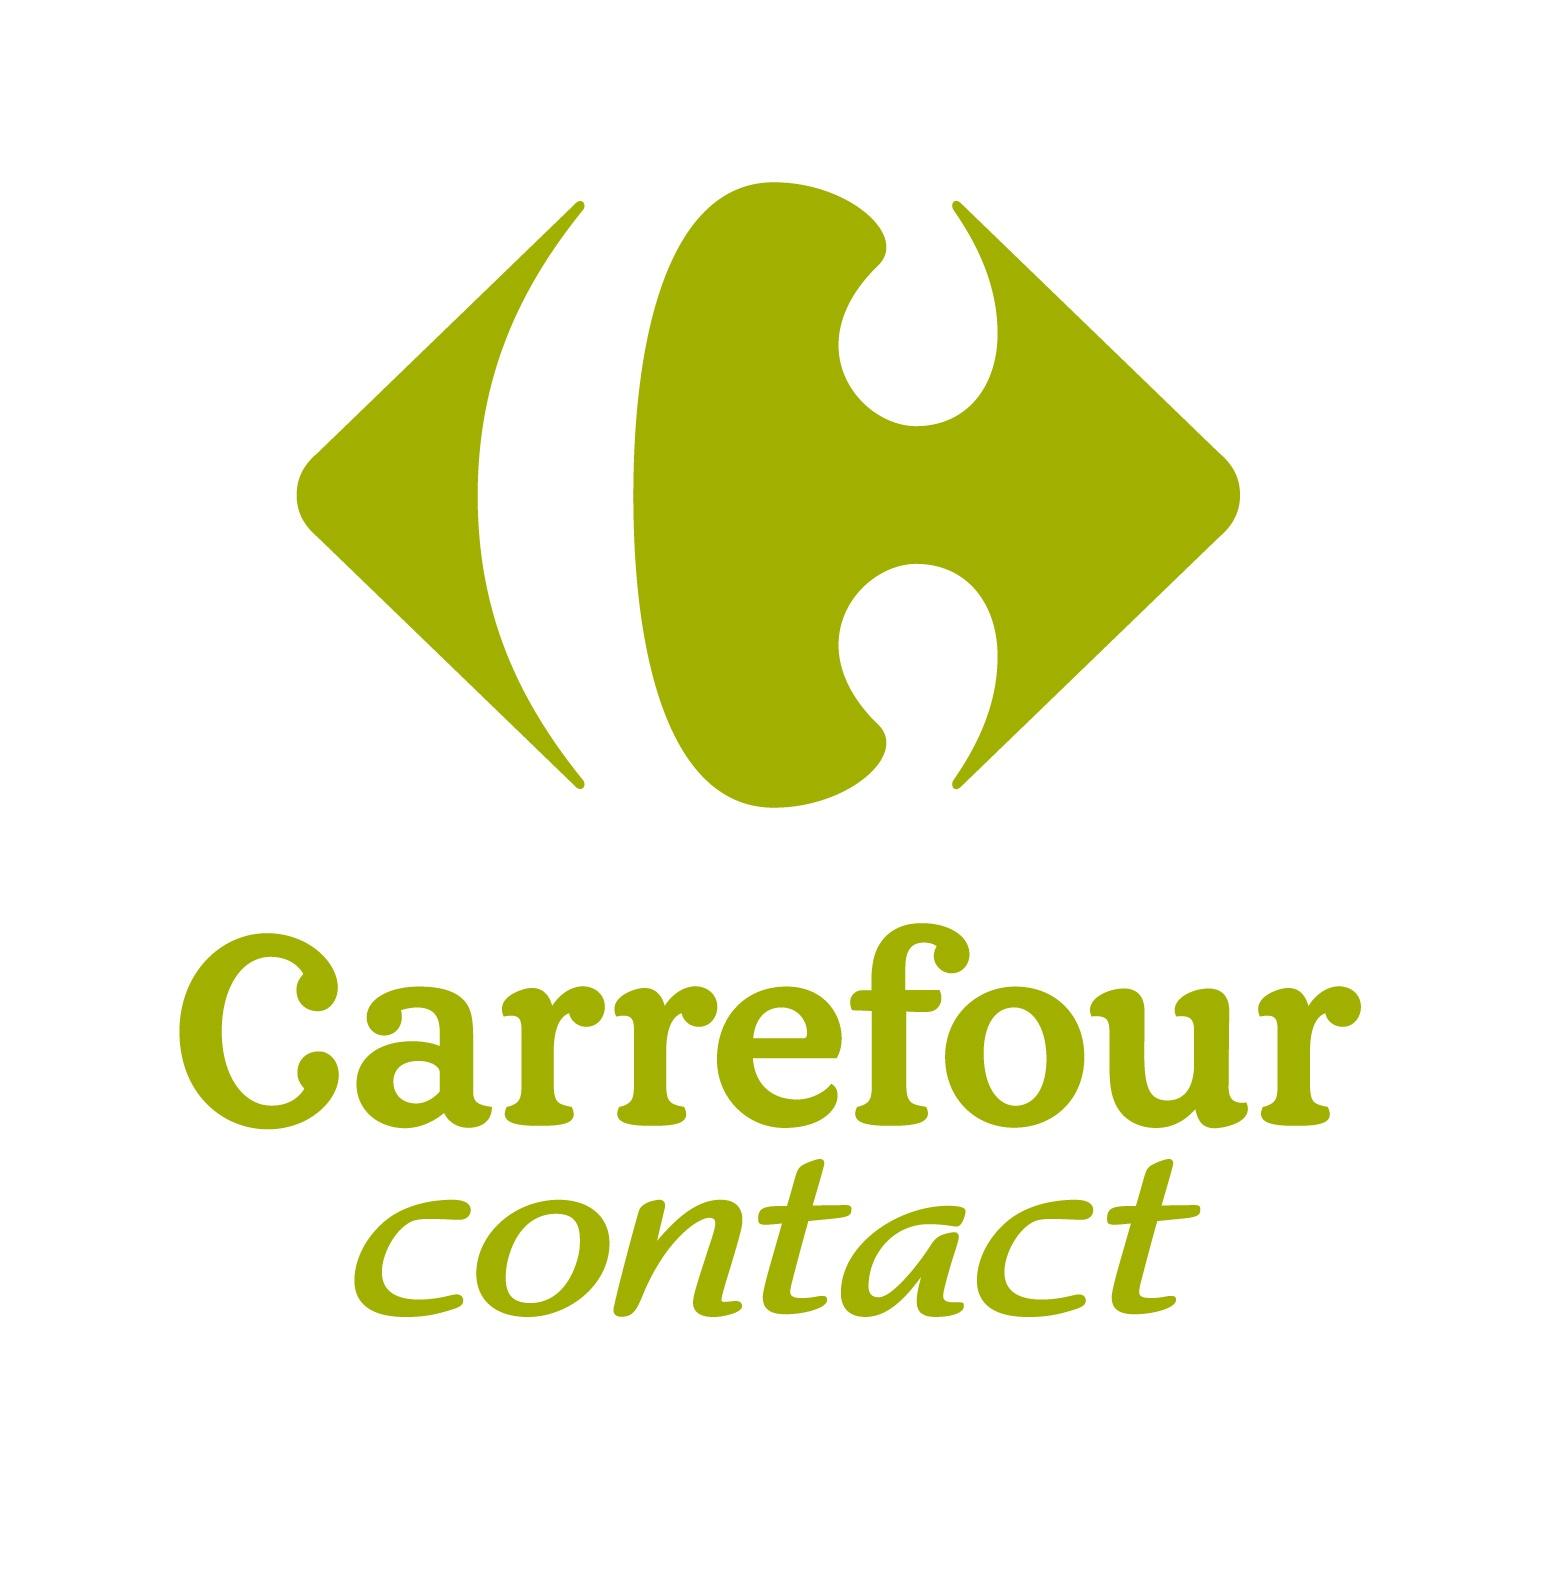 Carrefour Contact Veauche